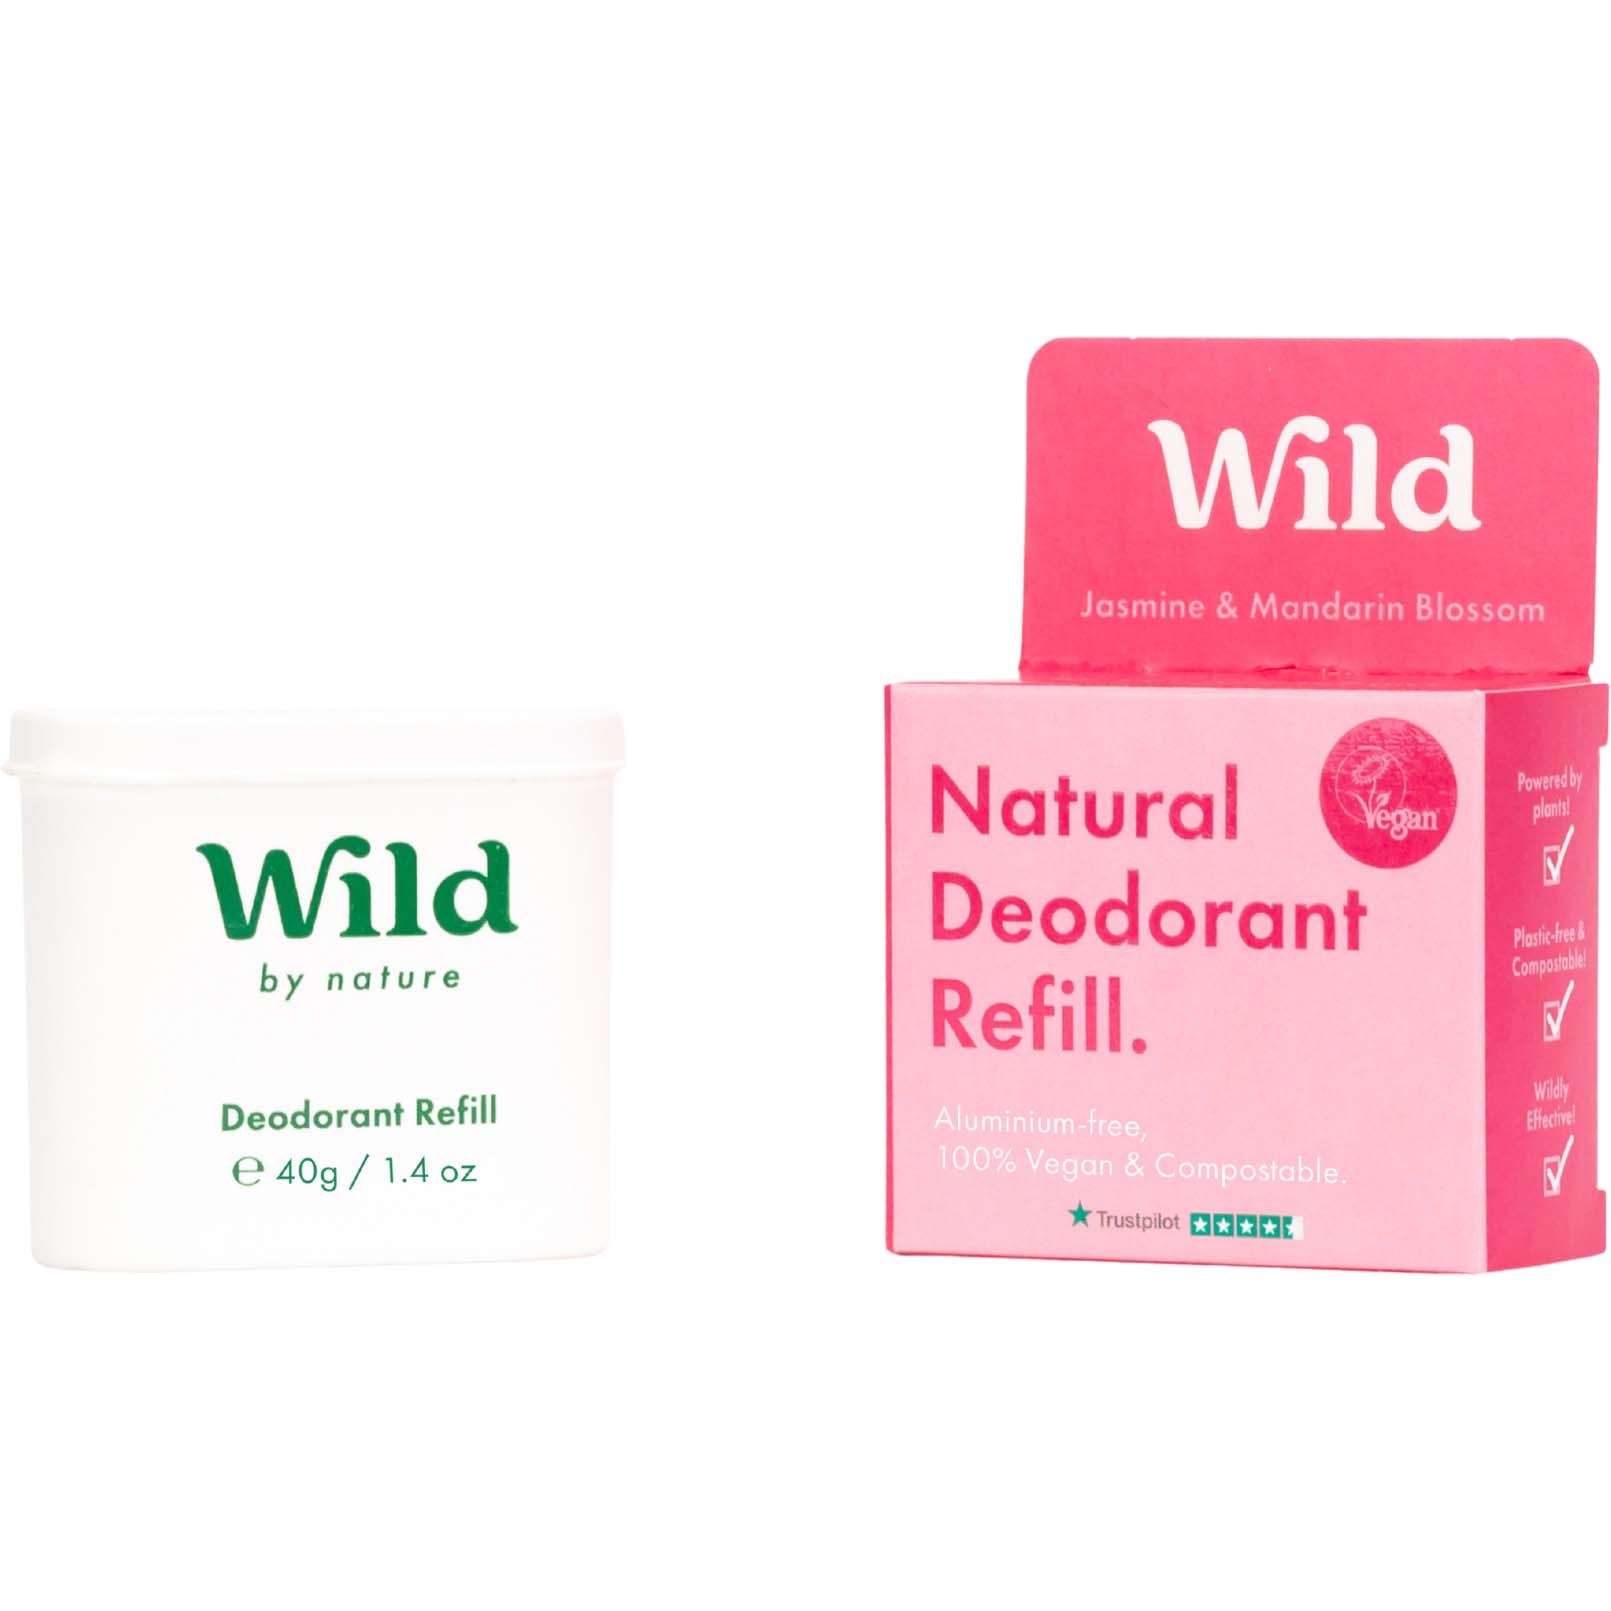 Bilde av Wild Natural Deodorant Refill Jasmine & Mandarin Blossom 40 G